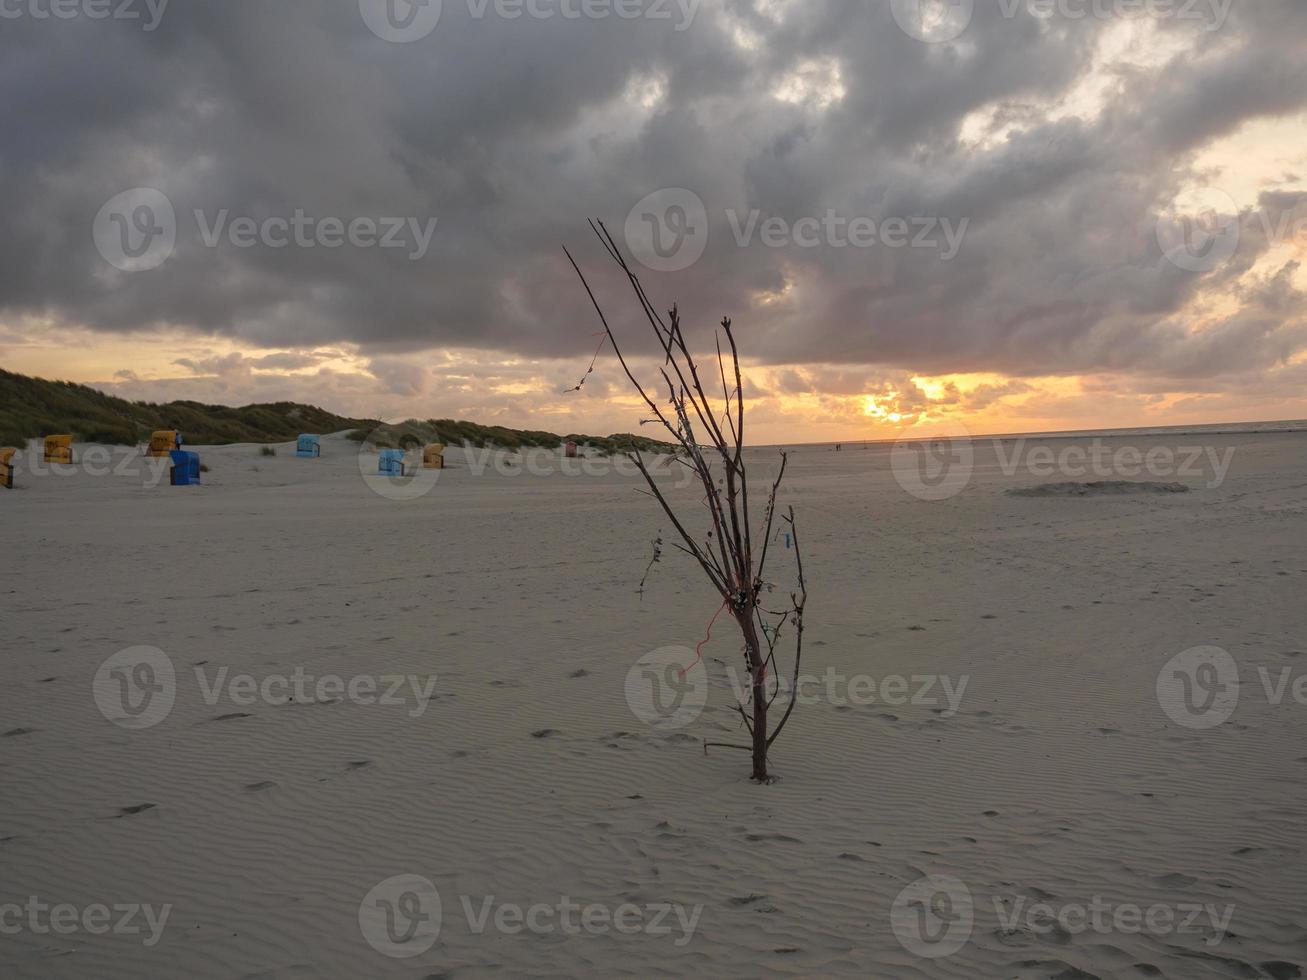 puesta de sol en la playa de juist foto